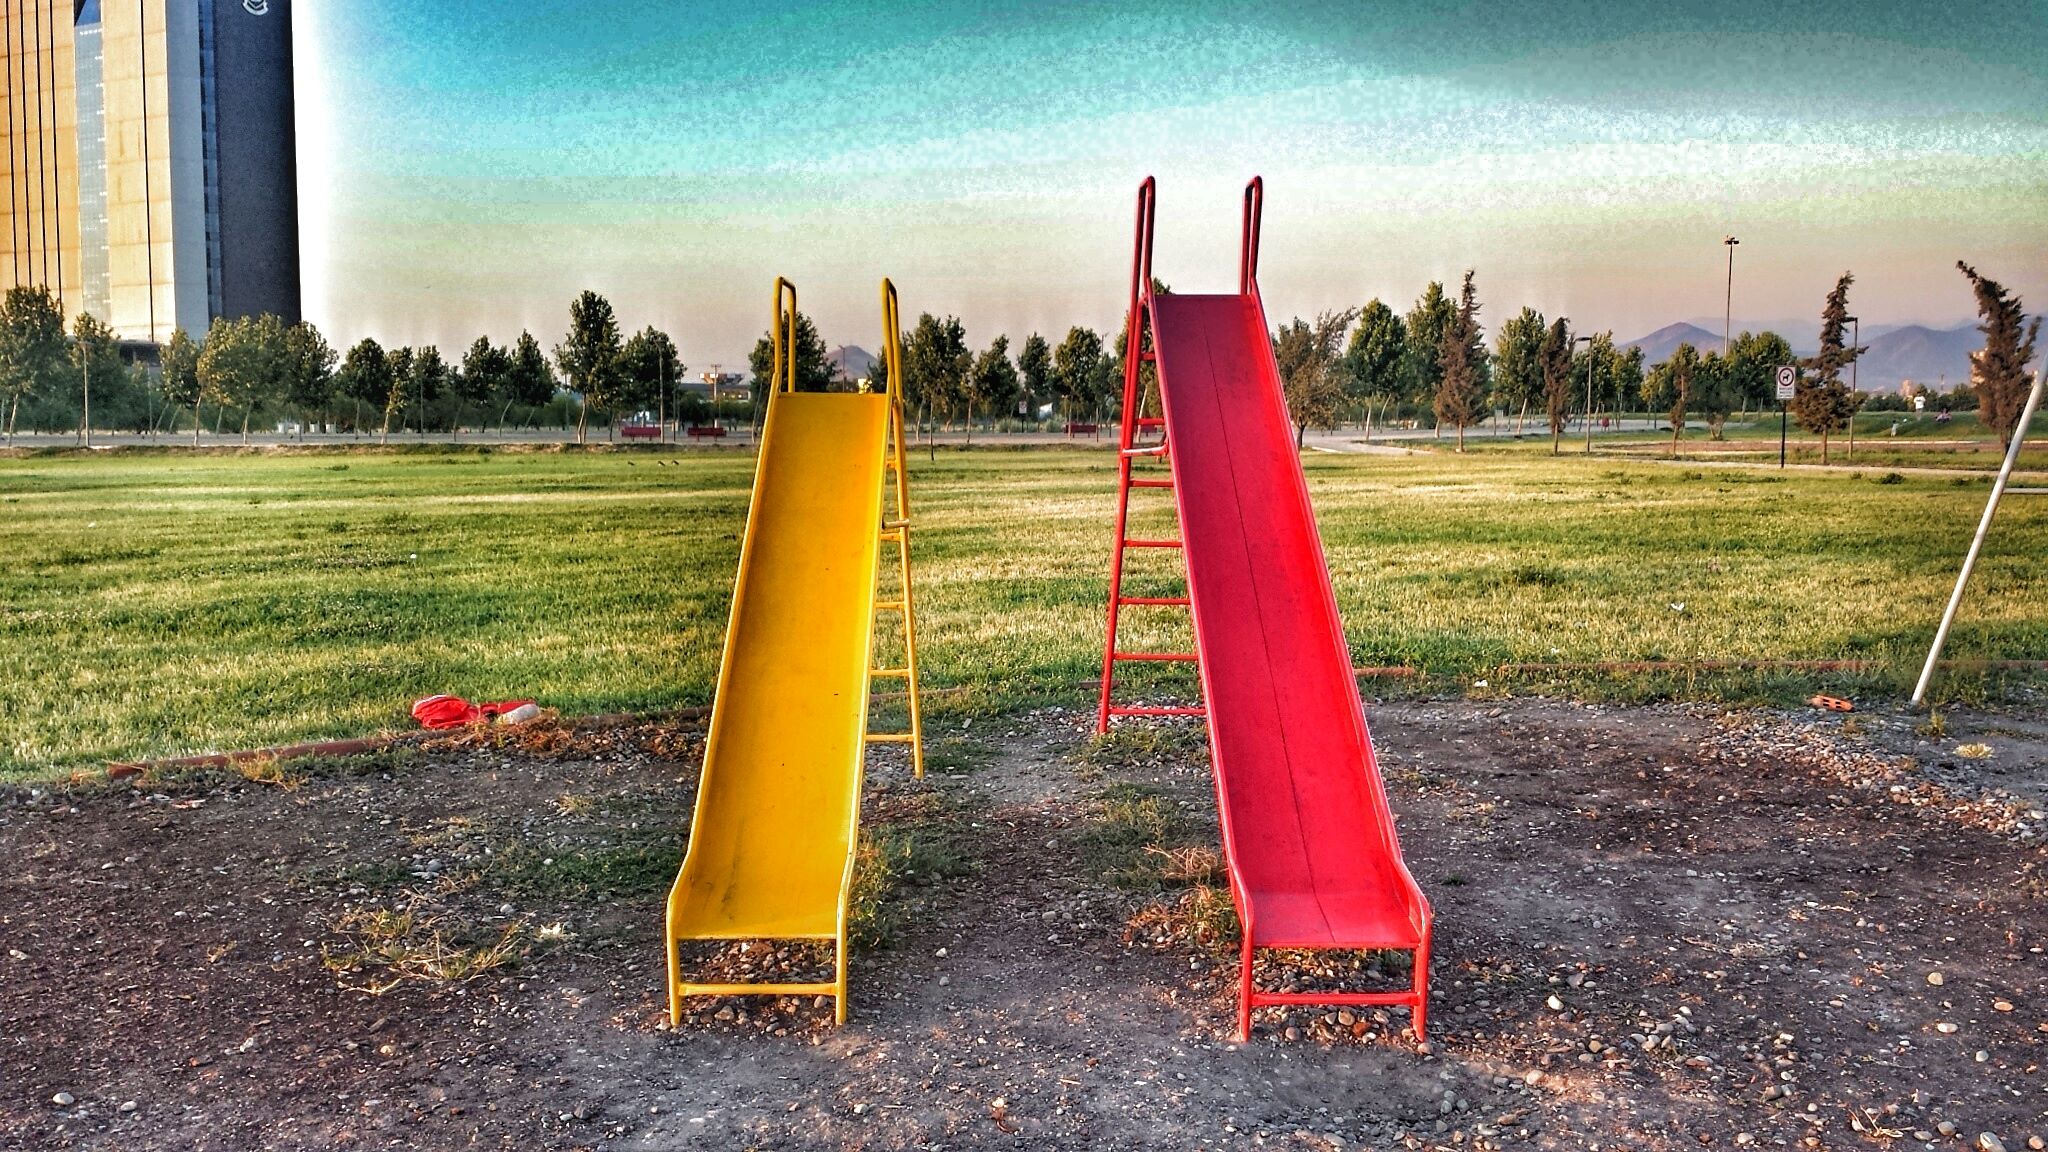 Slides in park